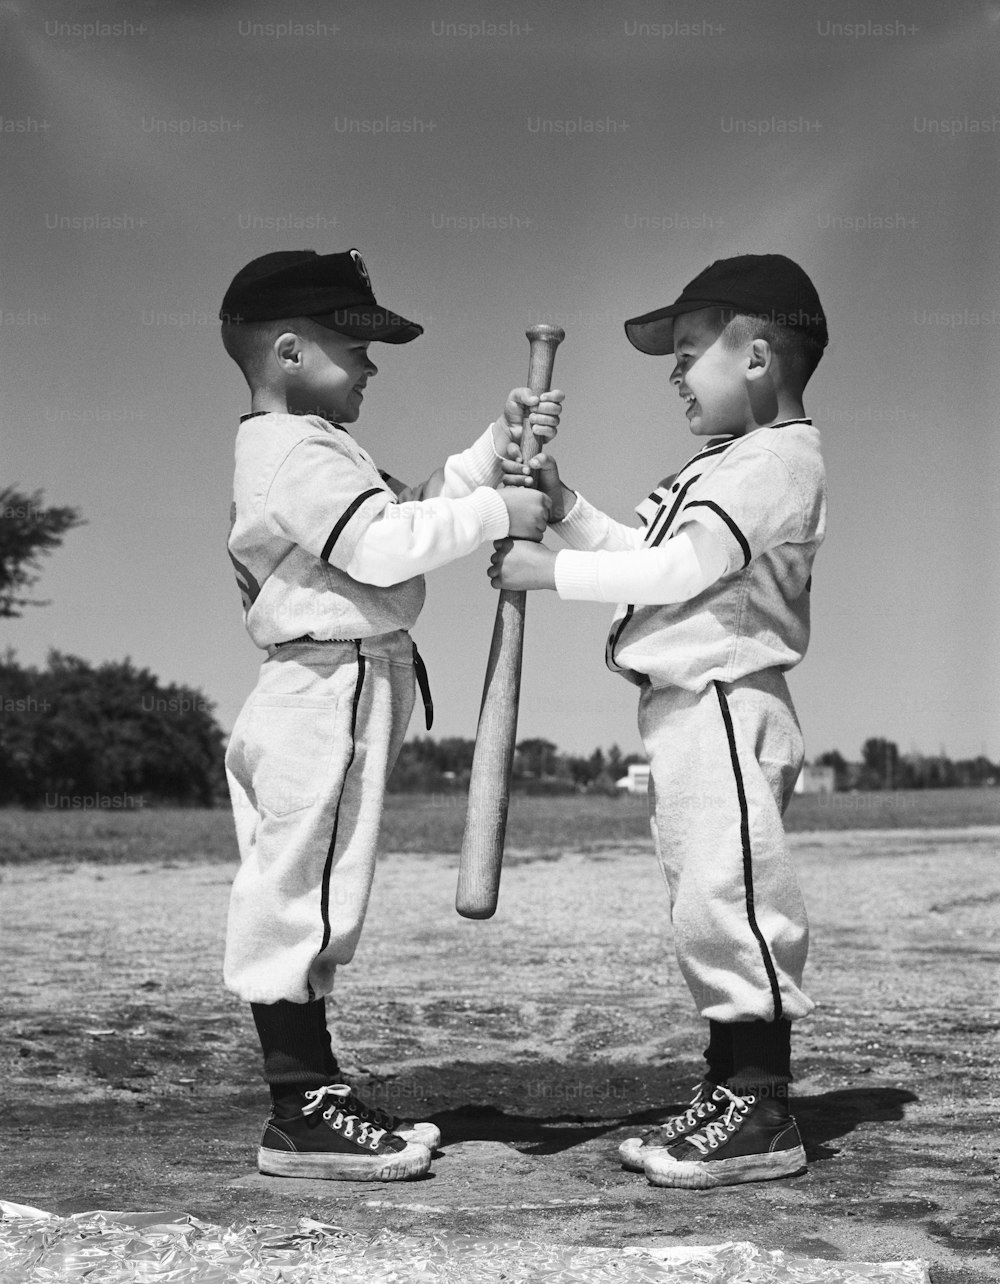 STATI UNITI - 1960 CIRCA: Due ragazzi in uniformi della Little League, uno di fronte all'altro, con in mano una mazza da baseball.